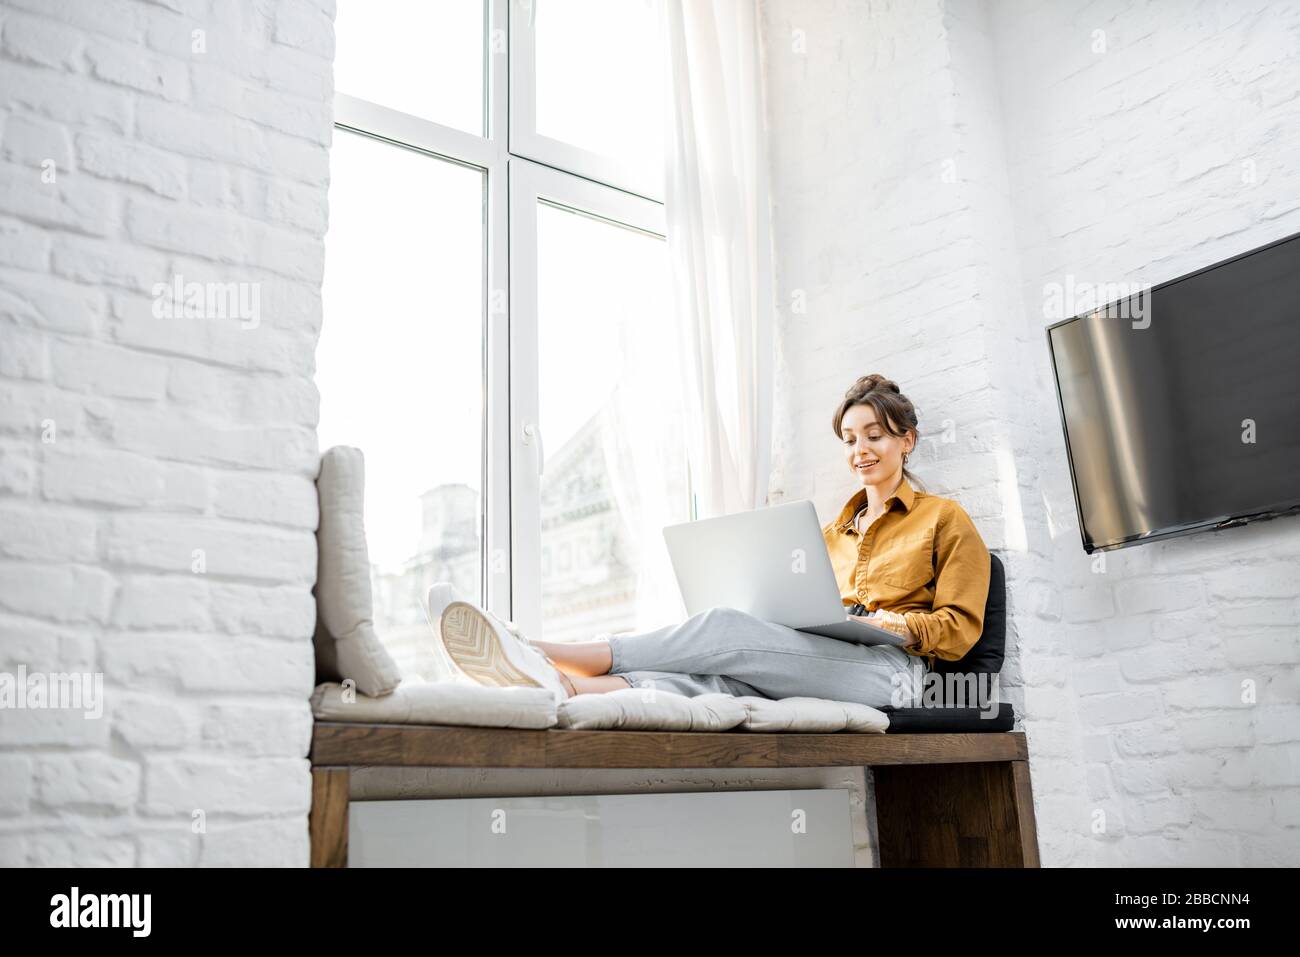 Junge Frau kleidete sich beiläufig am Laptop, während sie zu Hause auf dem Fensterschweller saß. Arbeiten Sie von zu Hause aus in gemütlichem Atmospha-Konzept Stockfoto